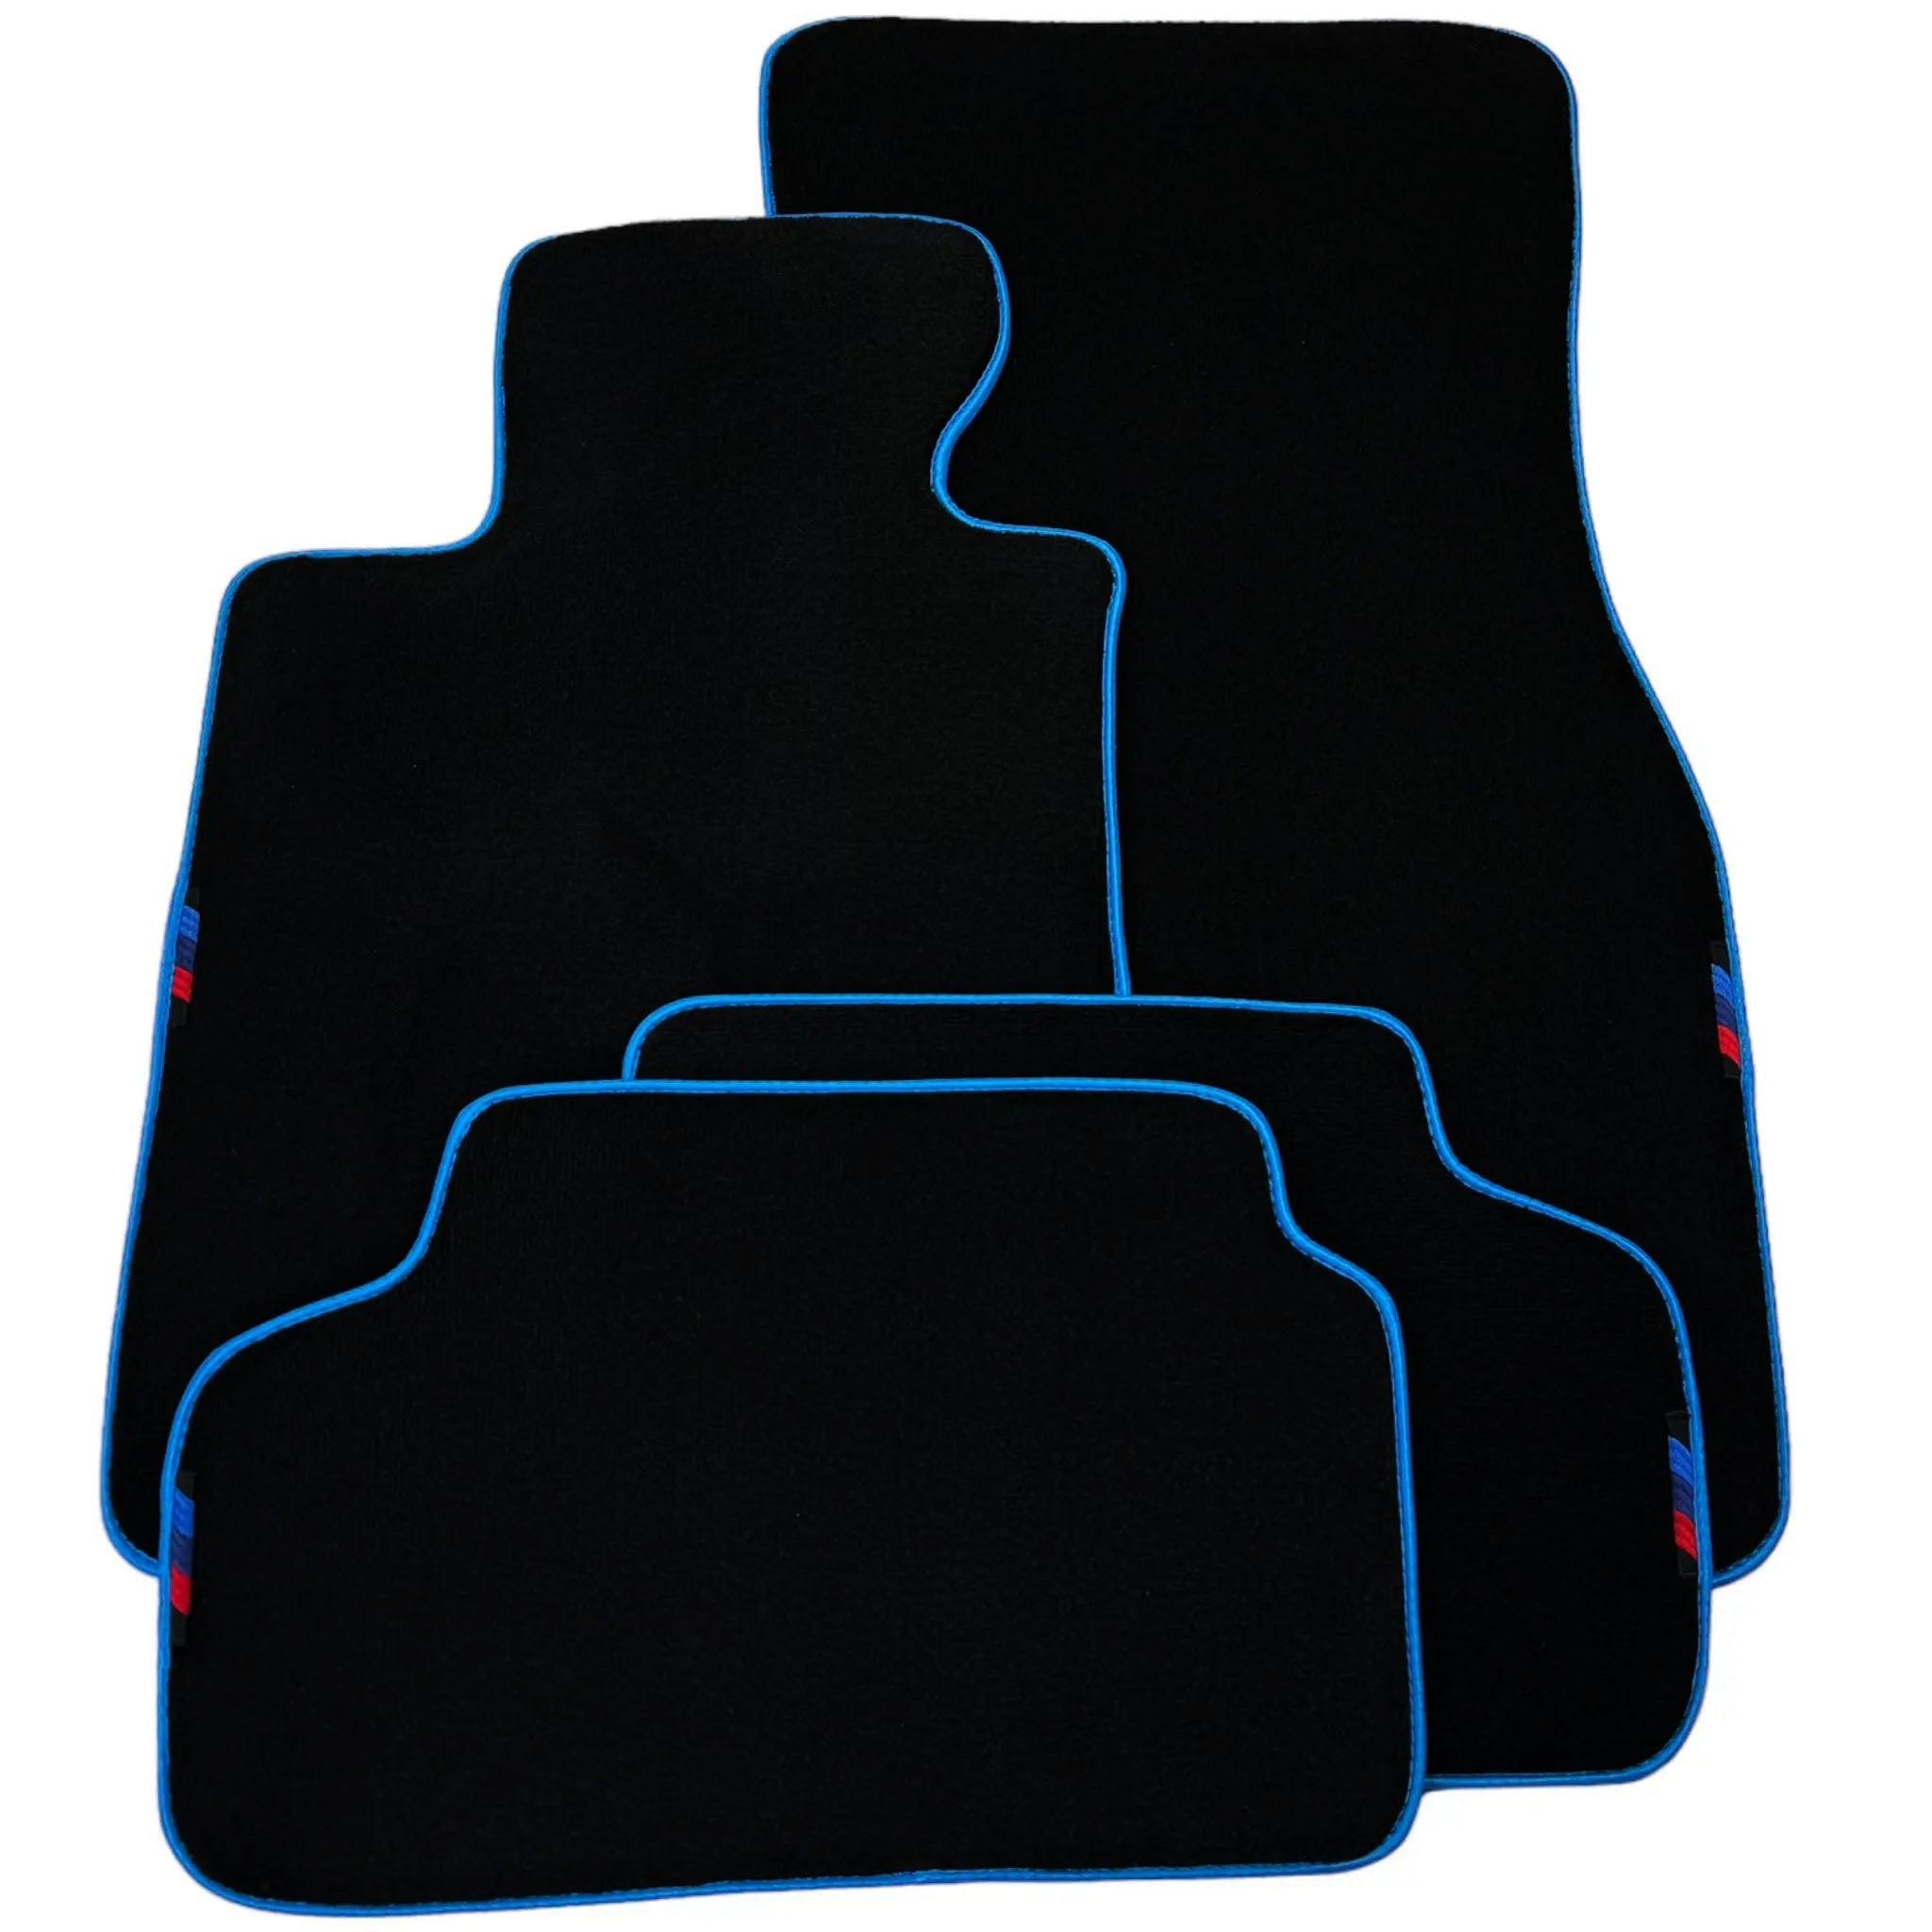 Black Floor Mats For BMW X3 - E83 SUV | Sky Blue Trim